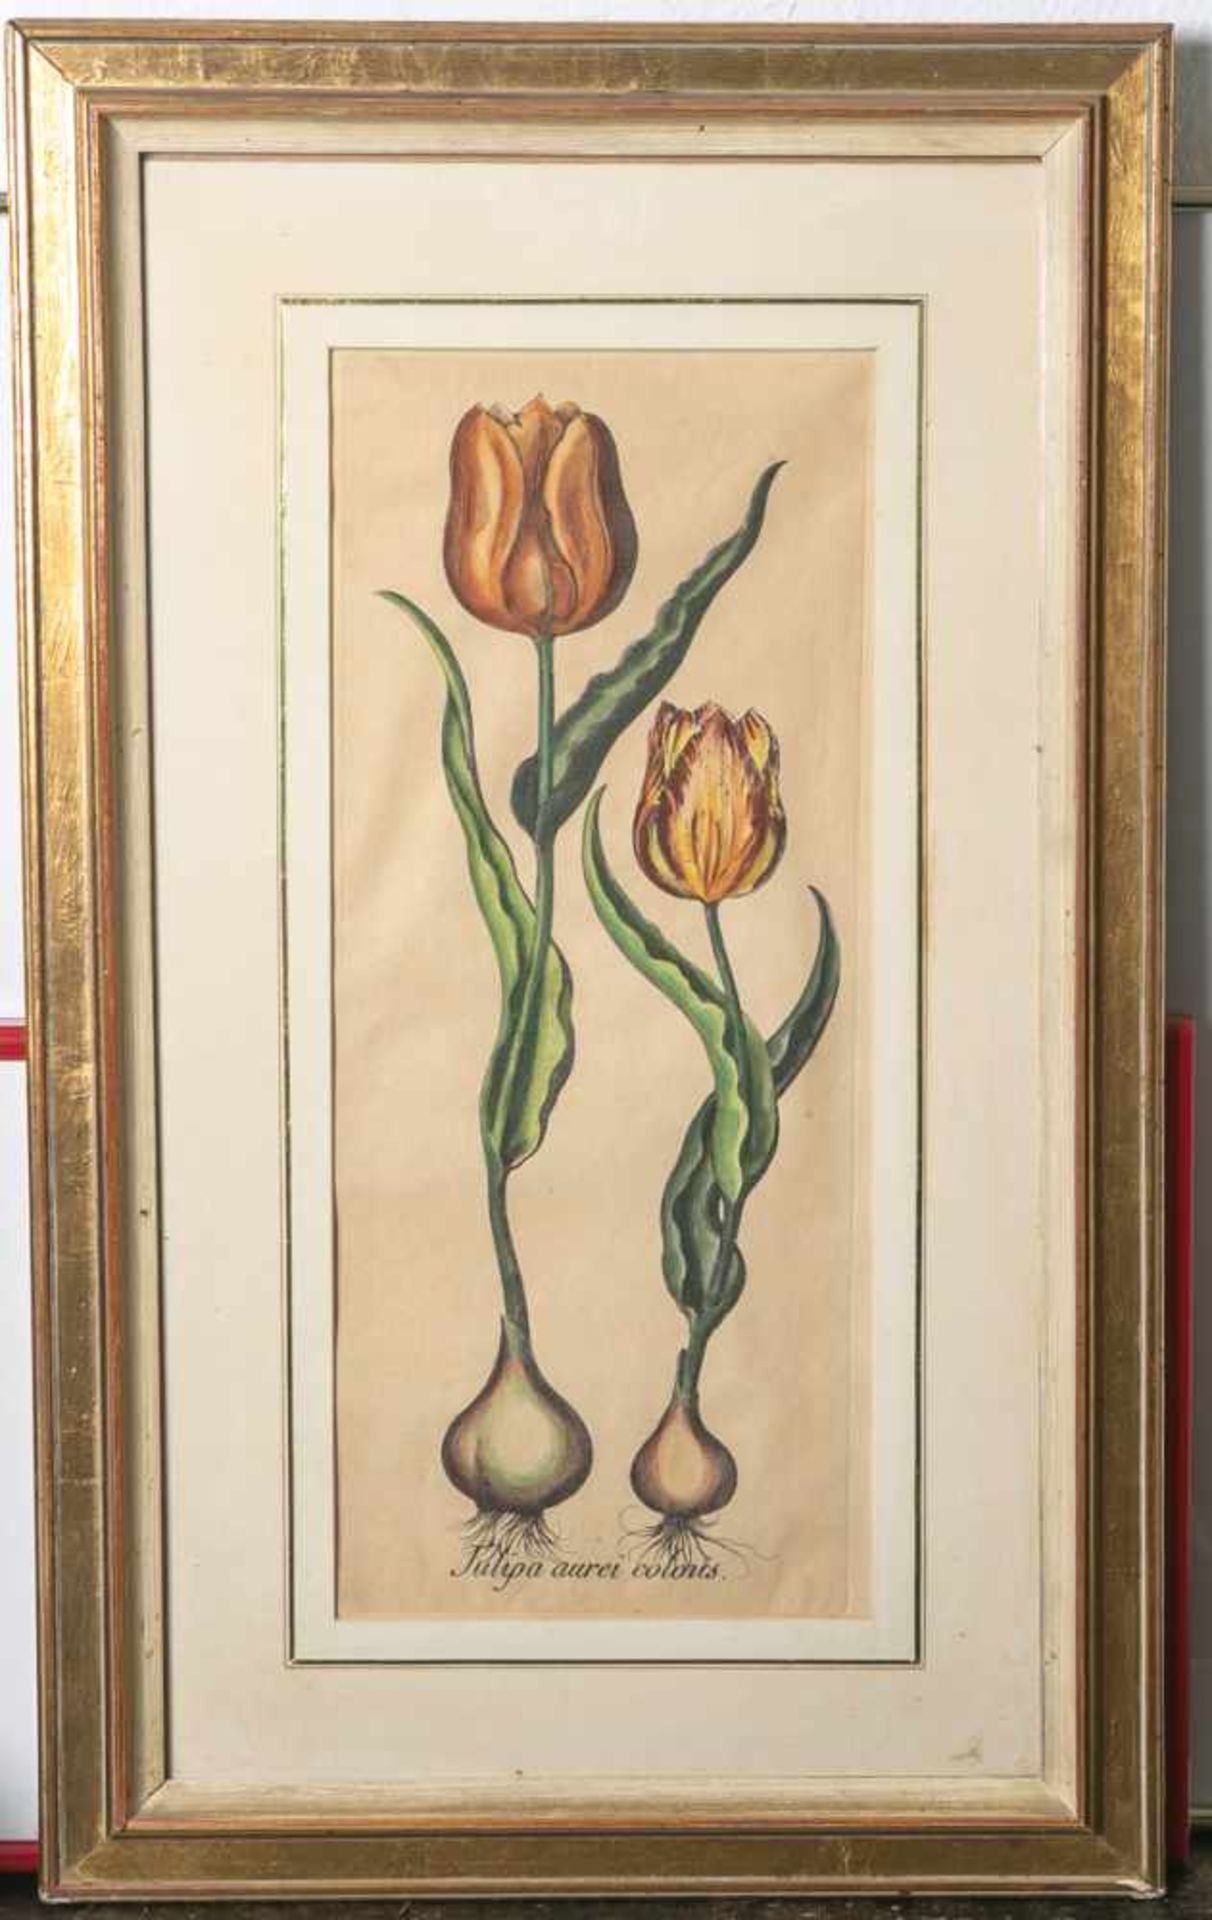 wohl Bessler (18. Jahrhundert), Tulipa aurei coloris, kolorierter Kupferstich, Blattgröße<b